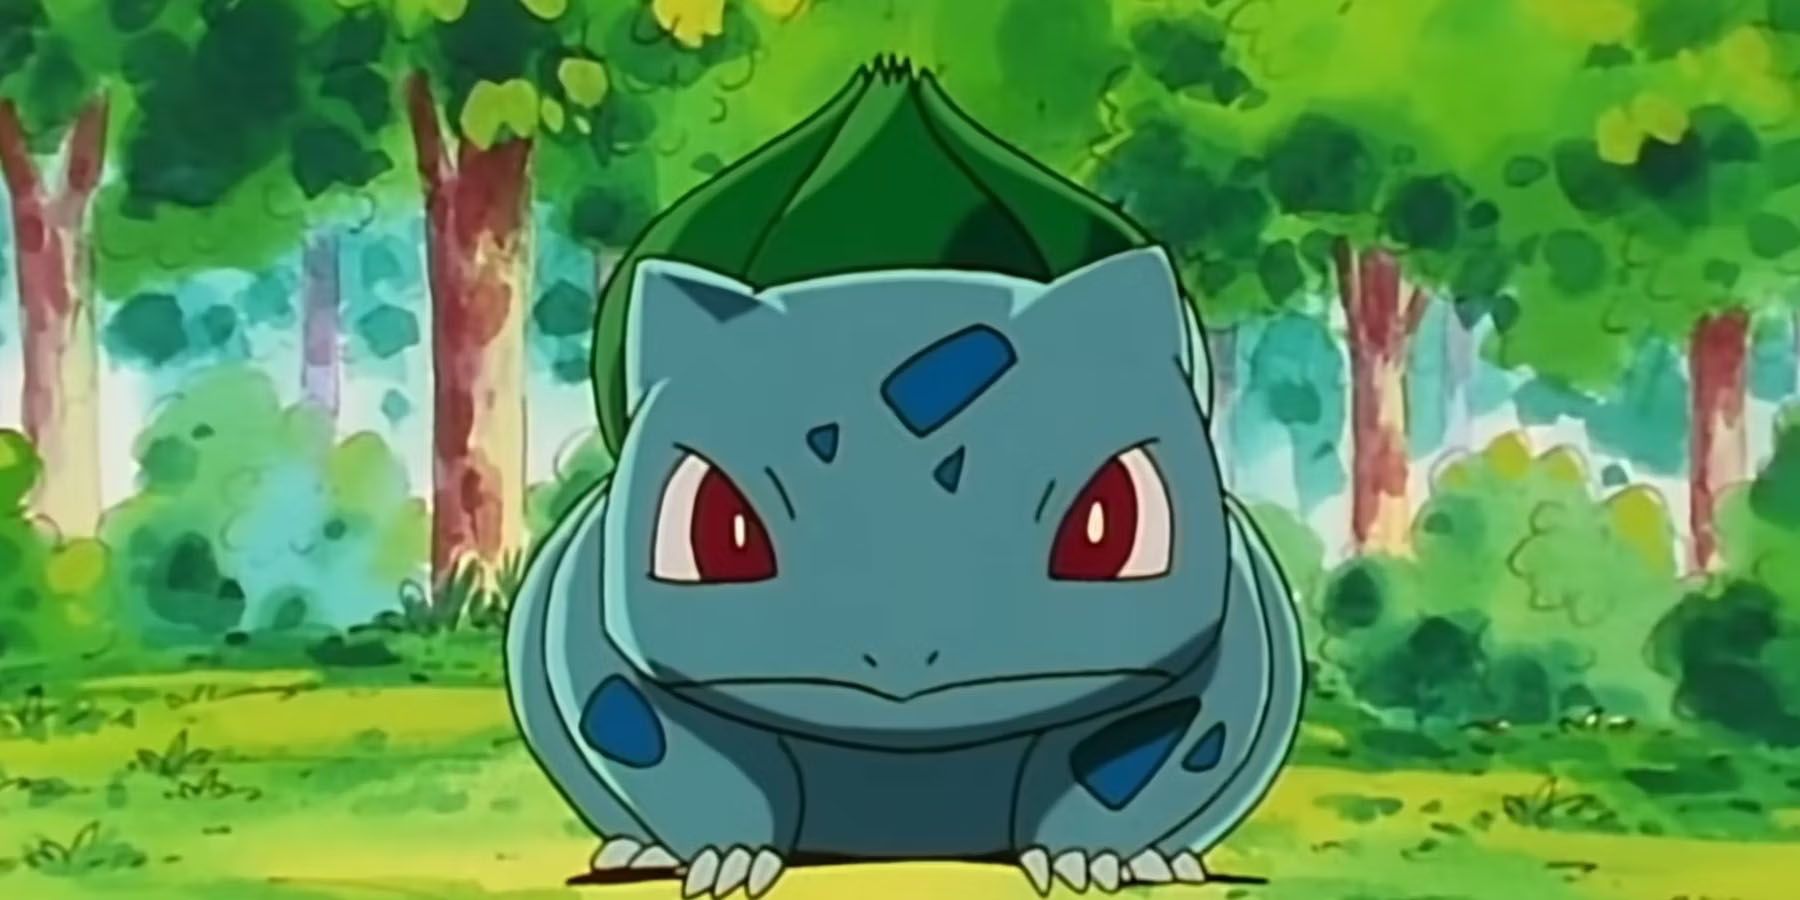 Bulbasaur - Pokémon - Image by Mipori #3935592 - Zerochan Anime Image Board